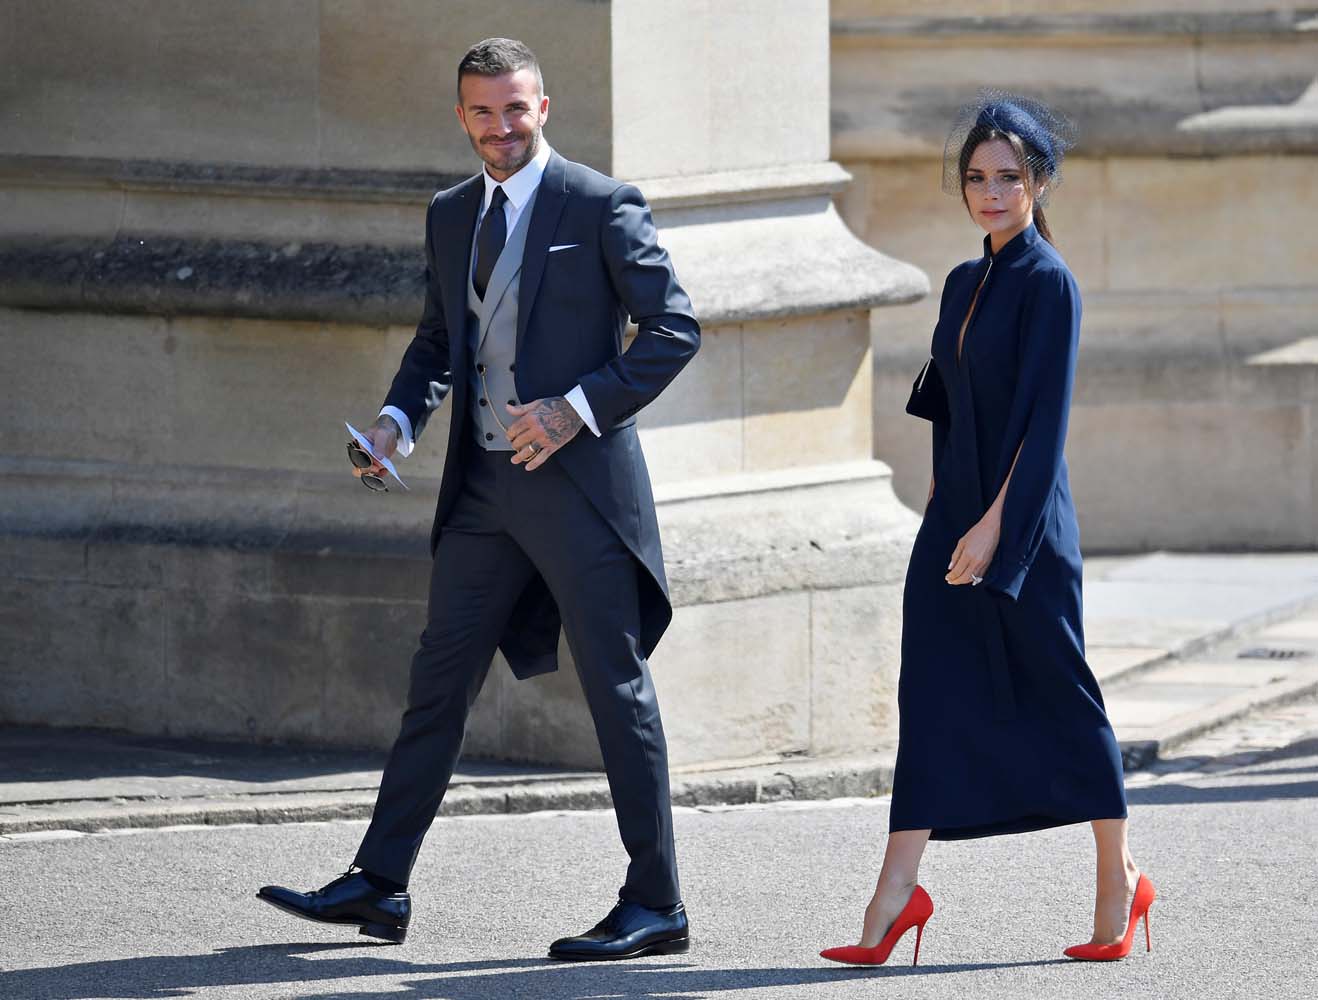 ¡Espectaculares! David y Victoria Beckham, George y Amal Clooney llegan a la boda real (Fotos)